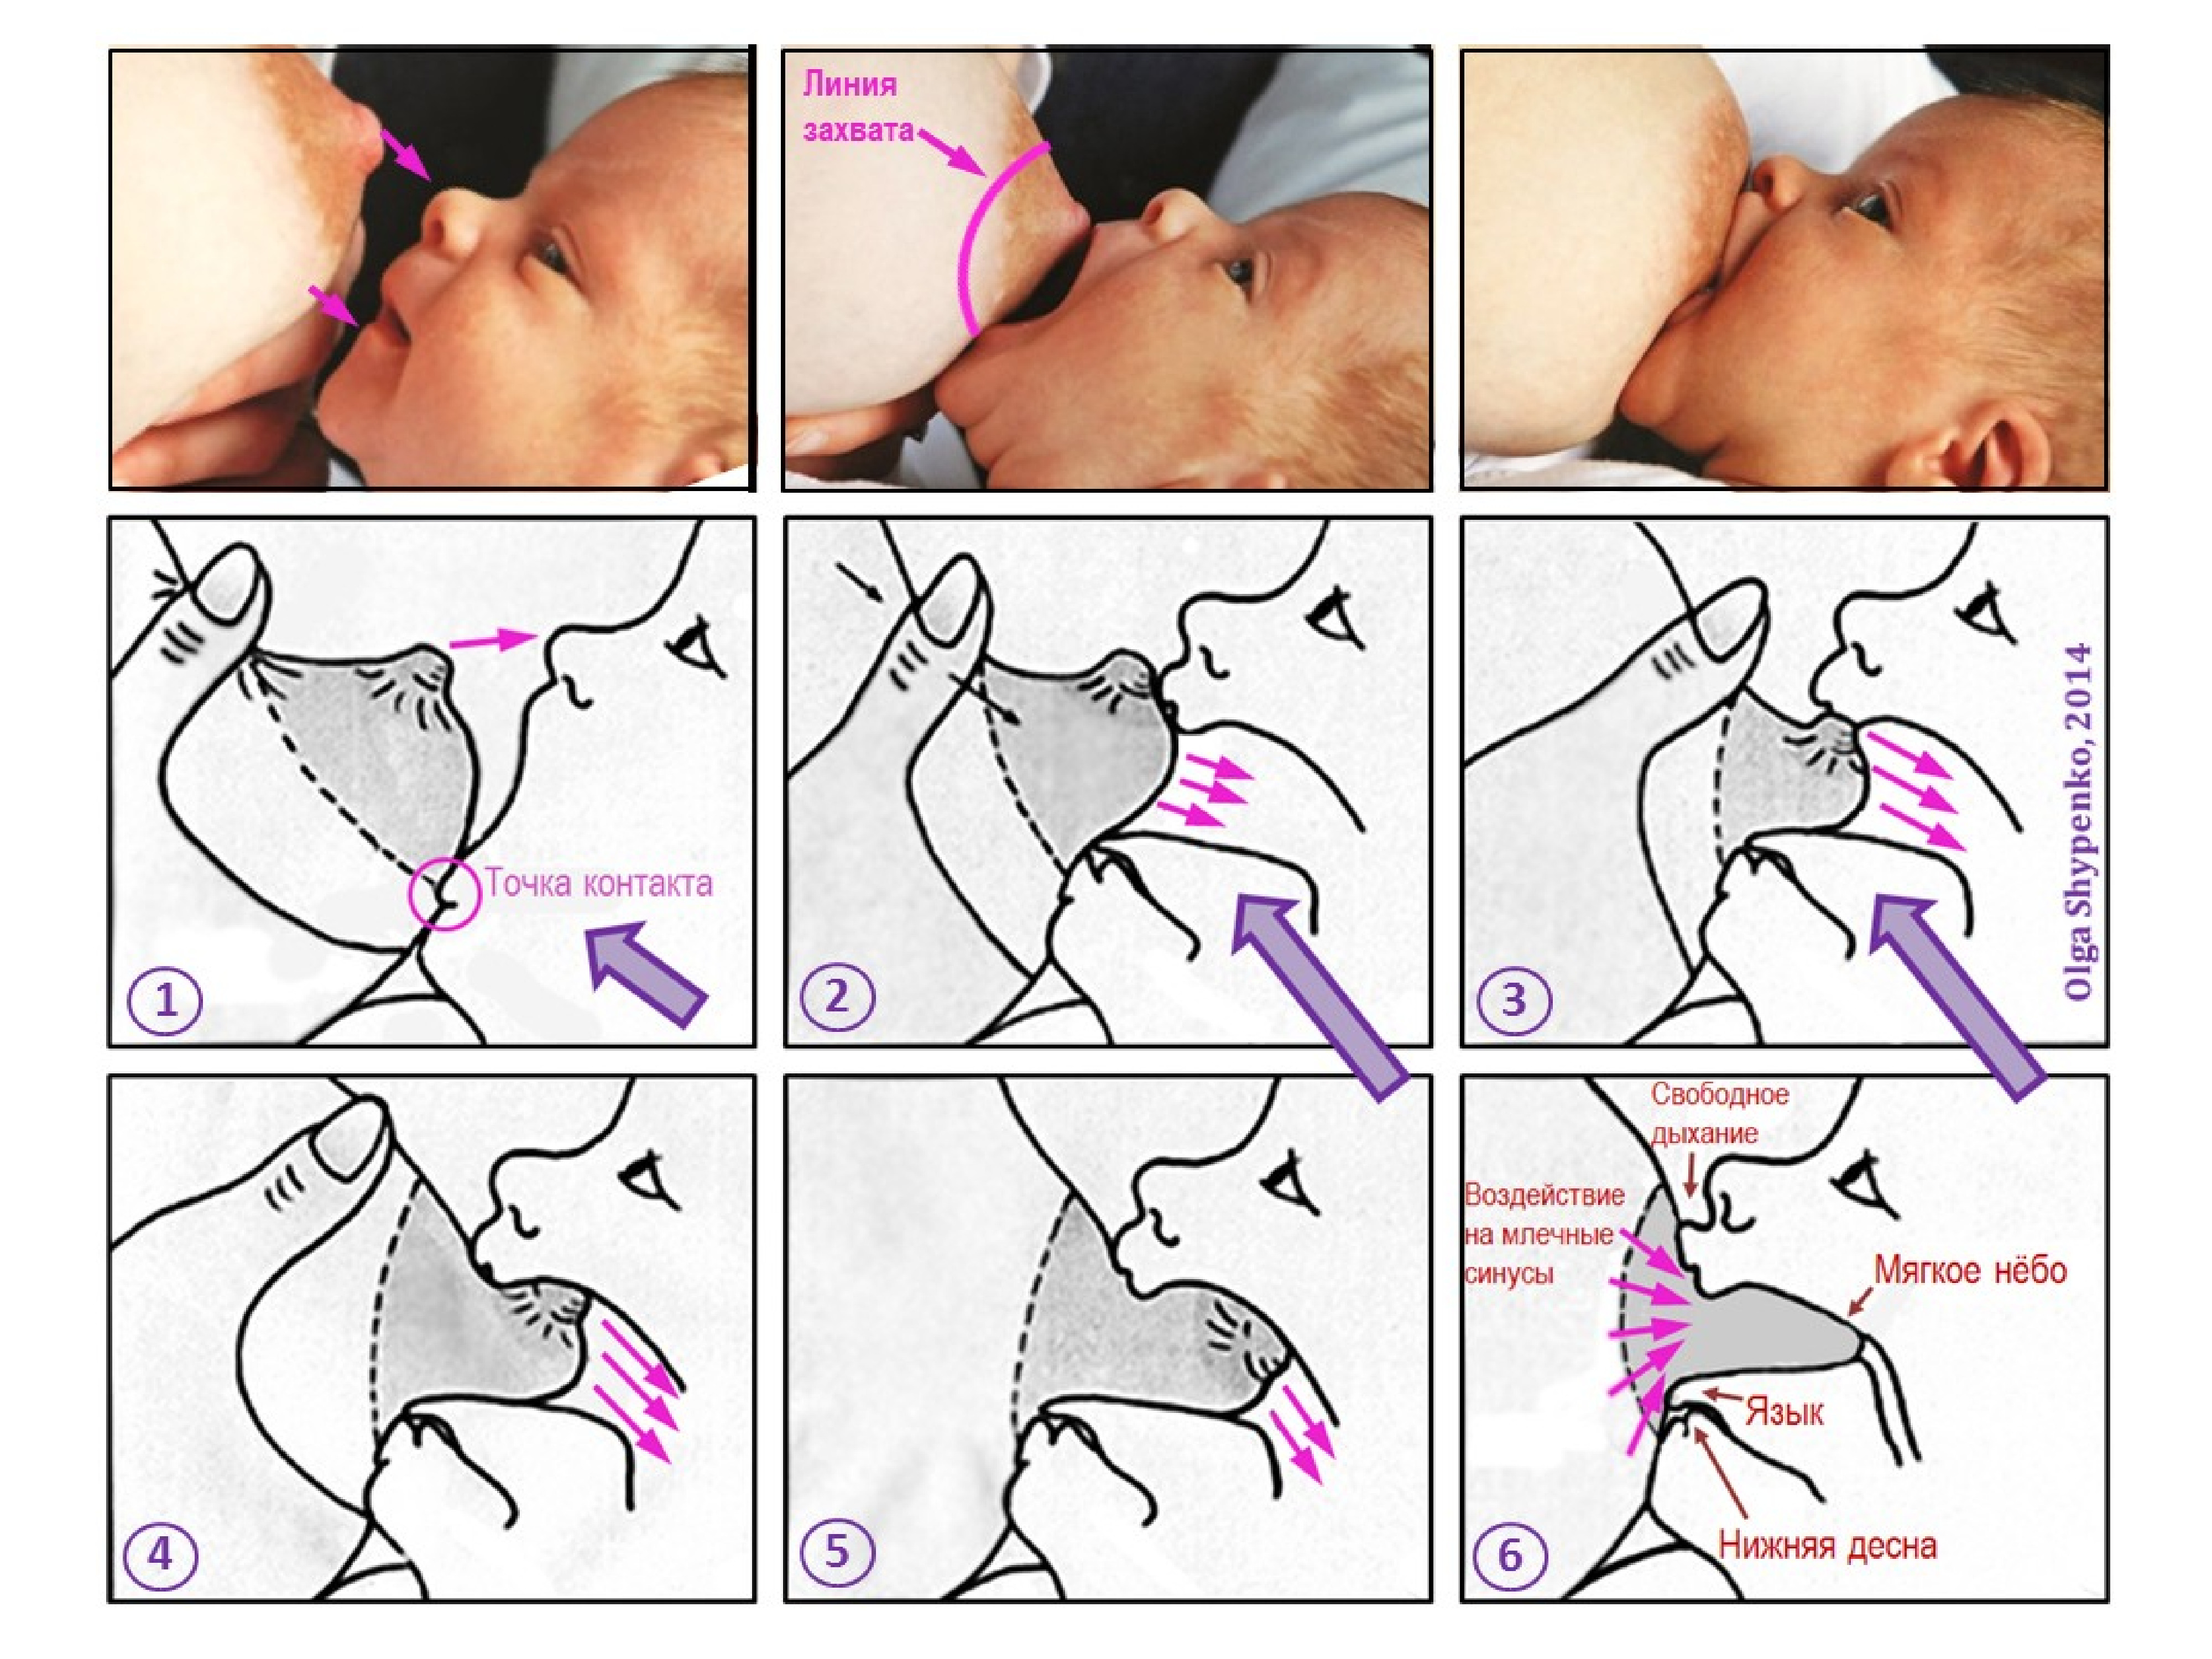 Правильное прикладывание при грудном вскармливании новорожденного